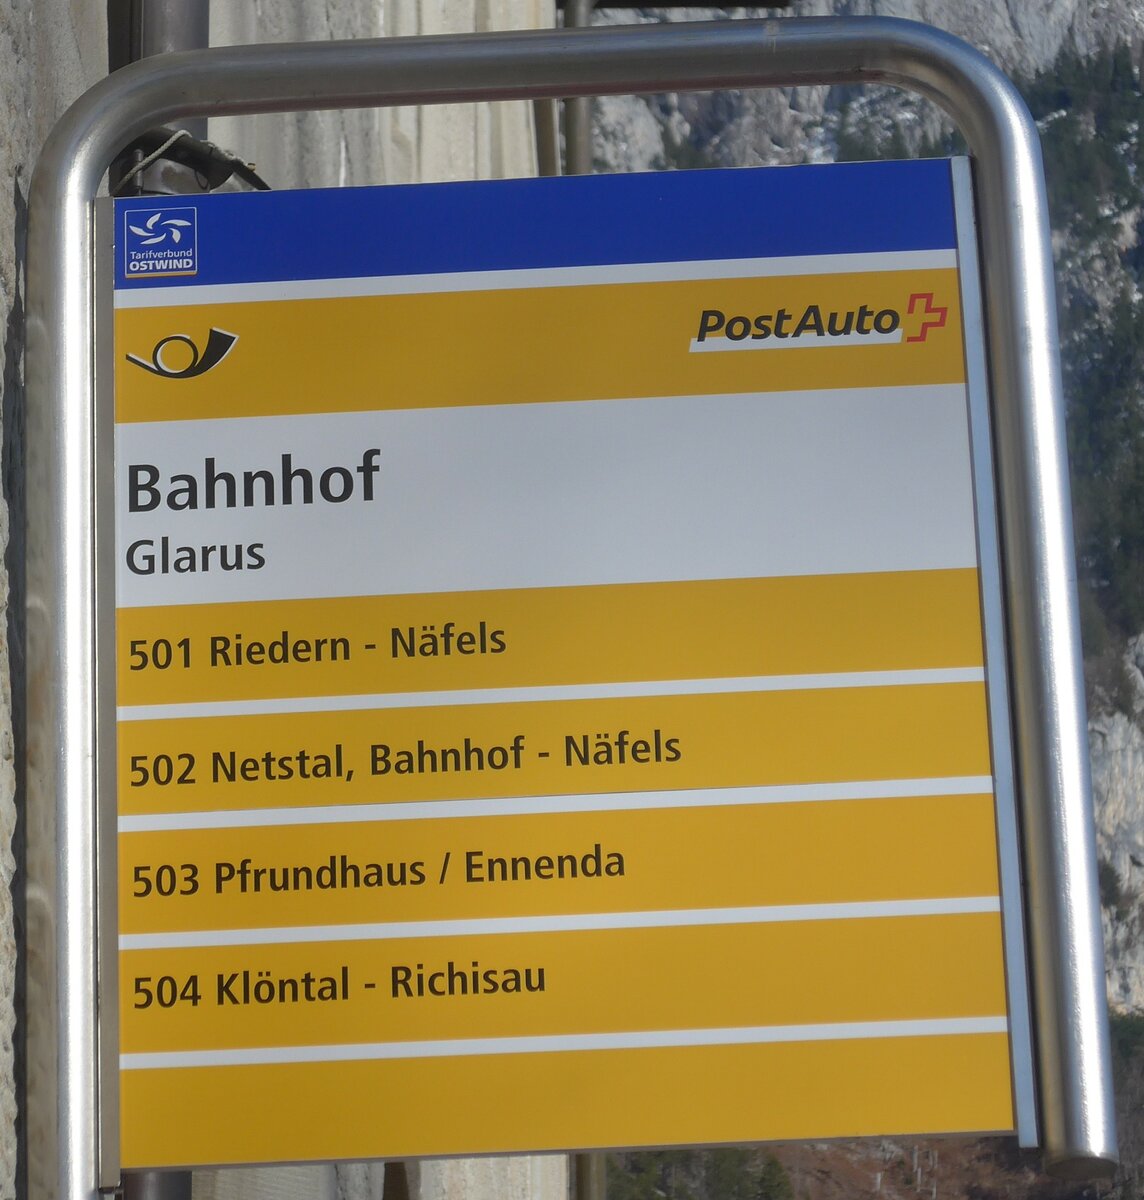 (214'200) - PostAuto-Haltestellenschild - Glarus, Bahnhof - am 15. Februar 2020